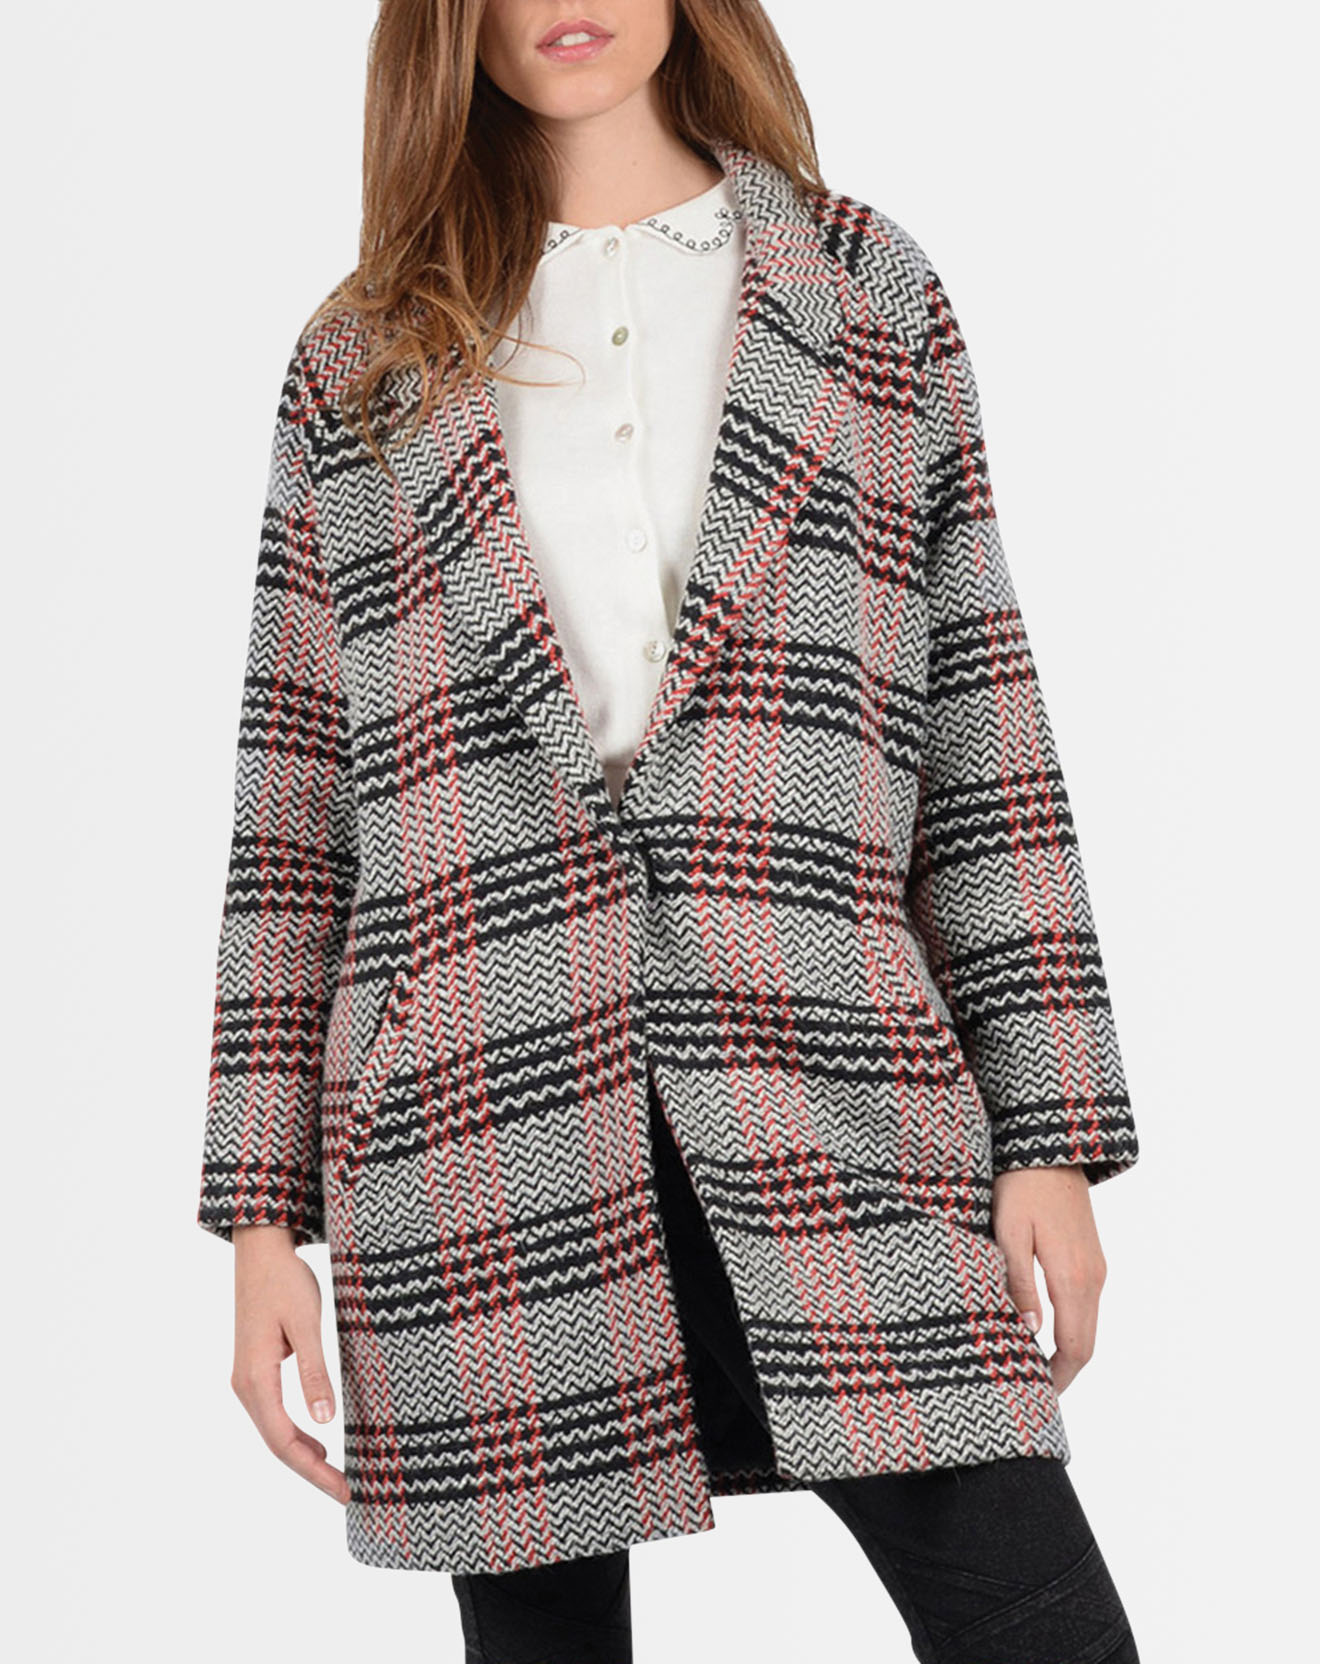 Manteau à larges carreaux gris/noir/rouge